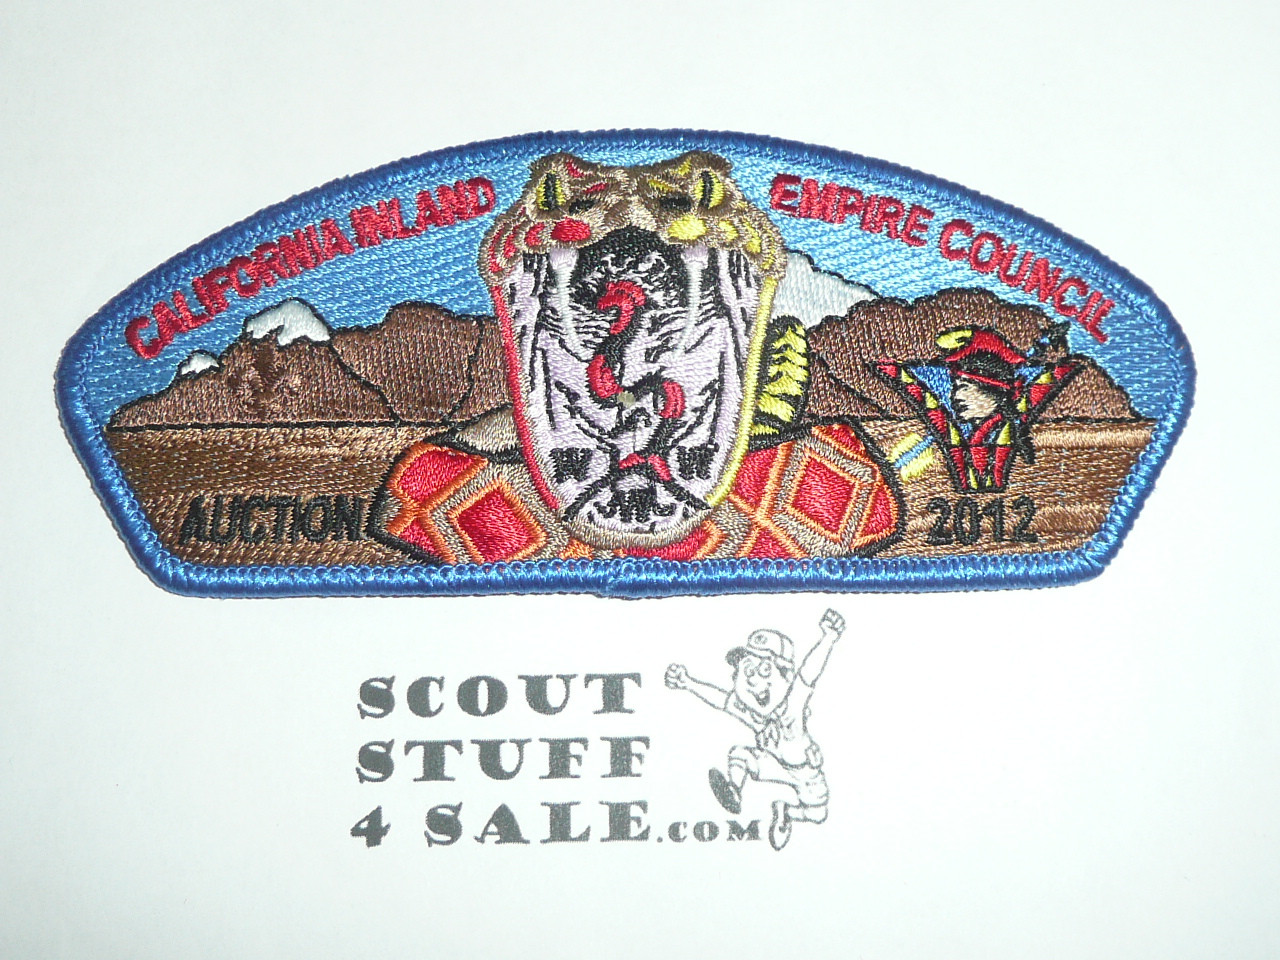 California Inland Empire Council sa149 2012 Auction CSP - Scout